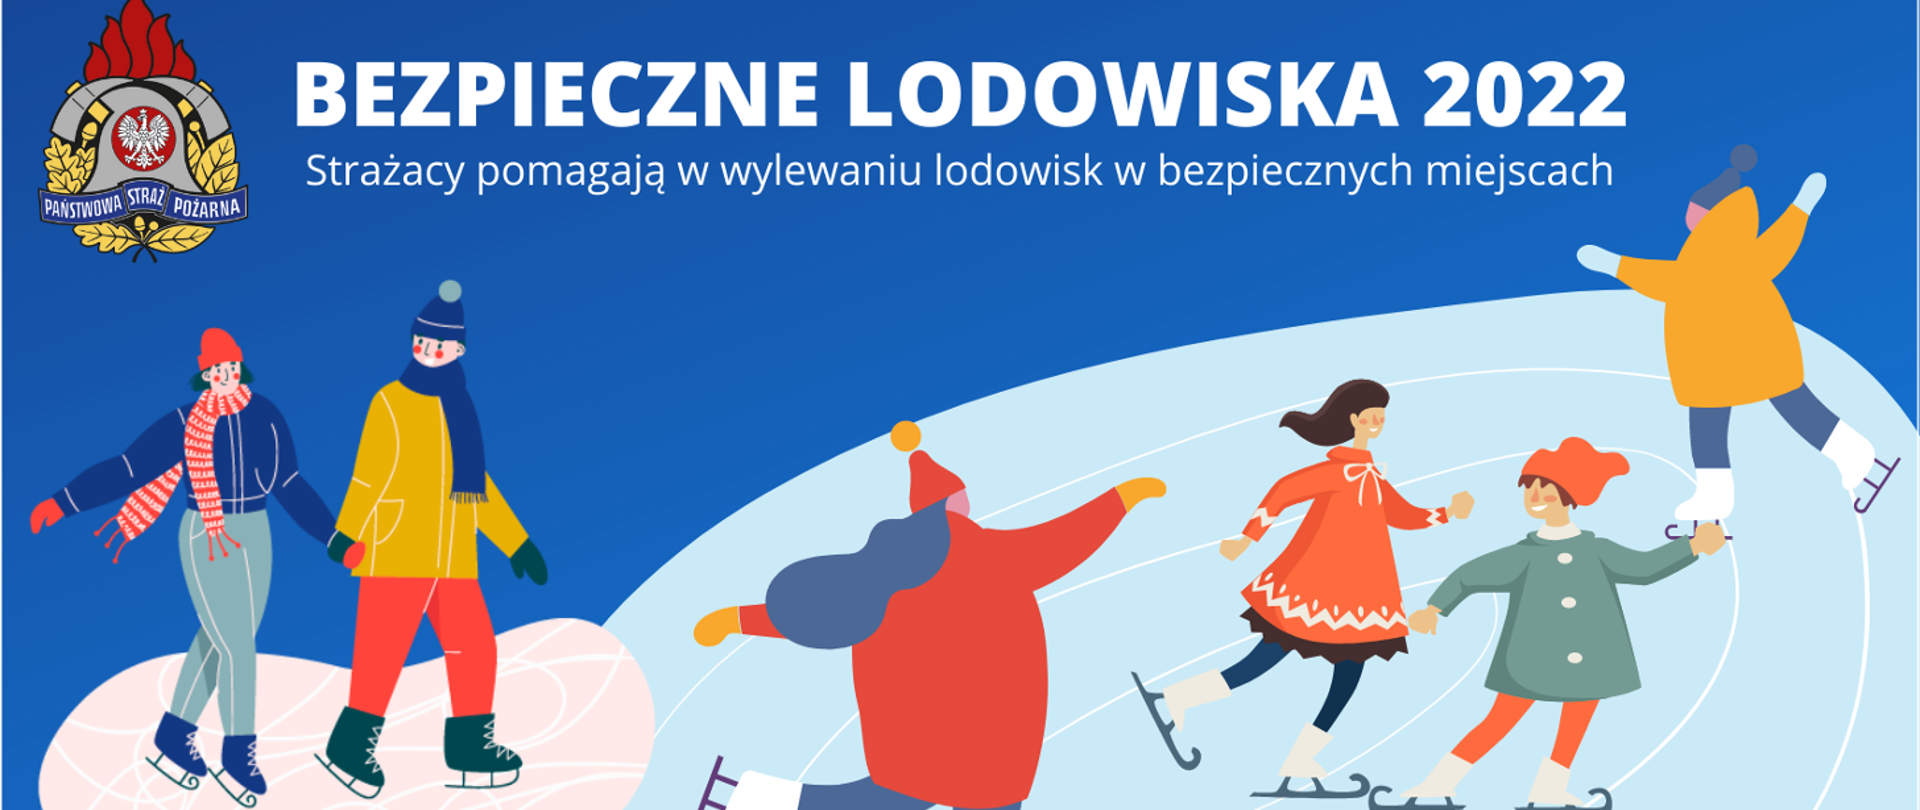 Zdjęcie przedstawia plakat reklamowy akcji "Bezpieczne Lodowiska 2022". Na zdjęciu widać bawiące się dzieci na lodowisku, logo PSP z napisem Strażacy pomagają w wylewaniu lodowisk w bezpiecznych miejscach